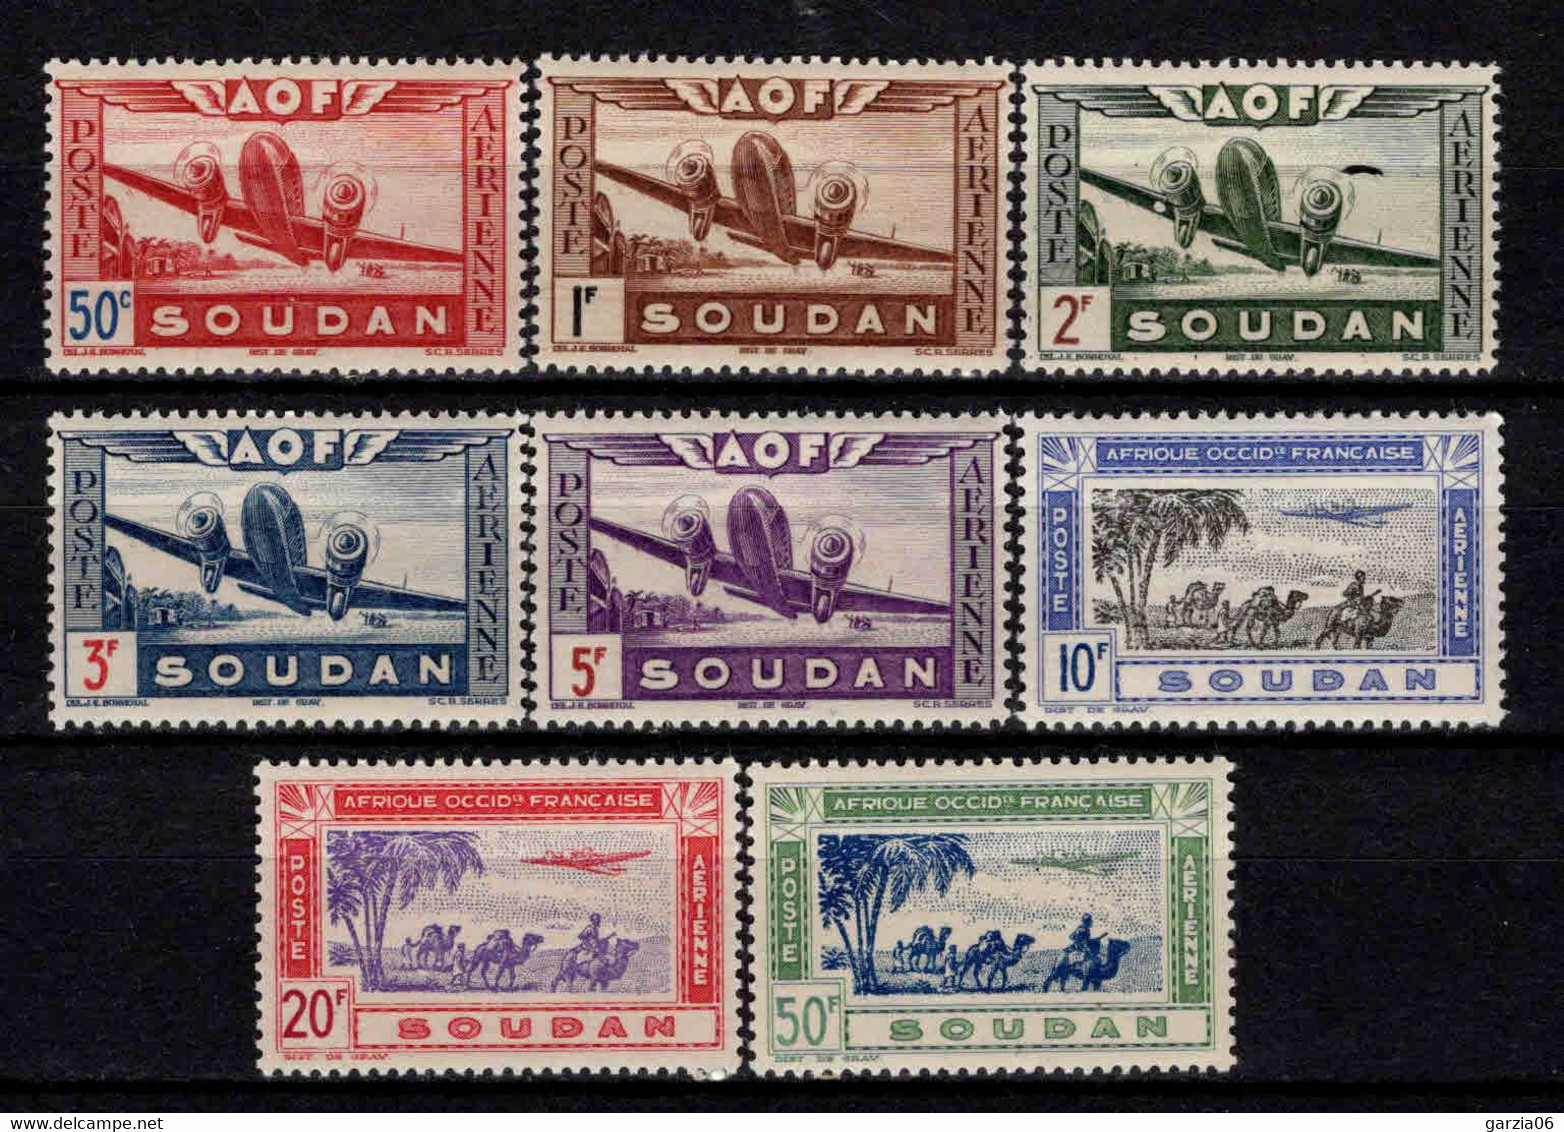 Soudan - 1942  - Avion En Vol - PA 10 à 17  - Neuf ** - MNH - Neufs